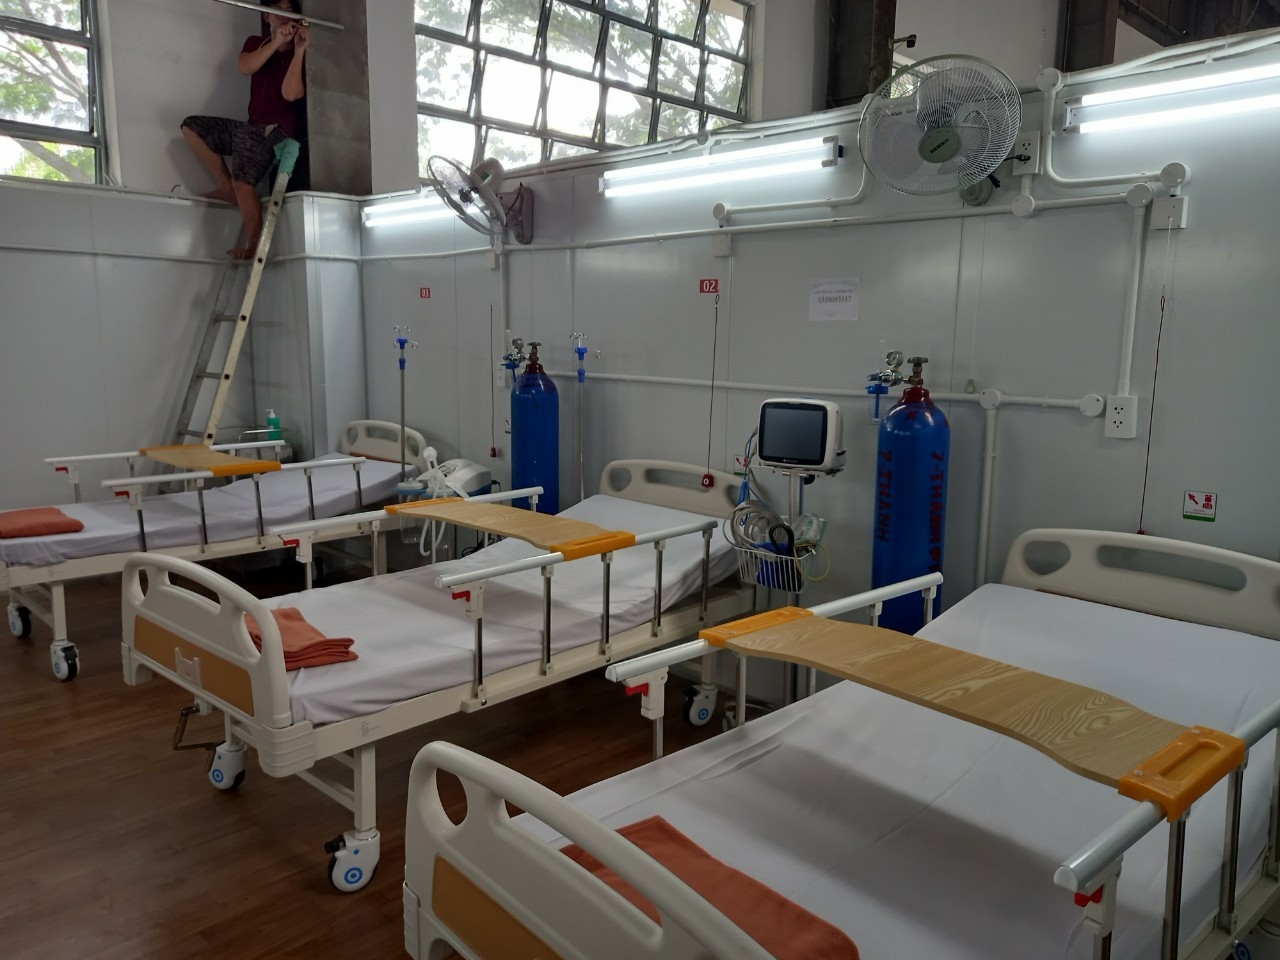 CĐ DKVN ủng hộ 3 máy thở hỗ trợ Bệnh viện Dã chiến số 16 tại TP. Hồ Chí Minh